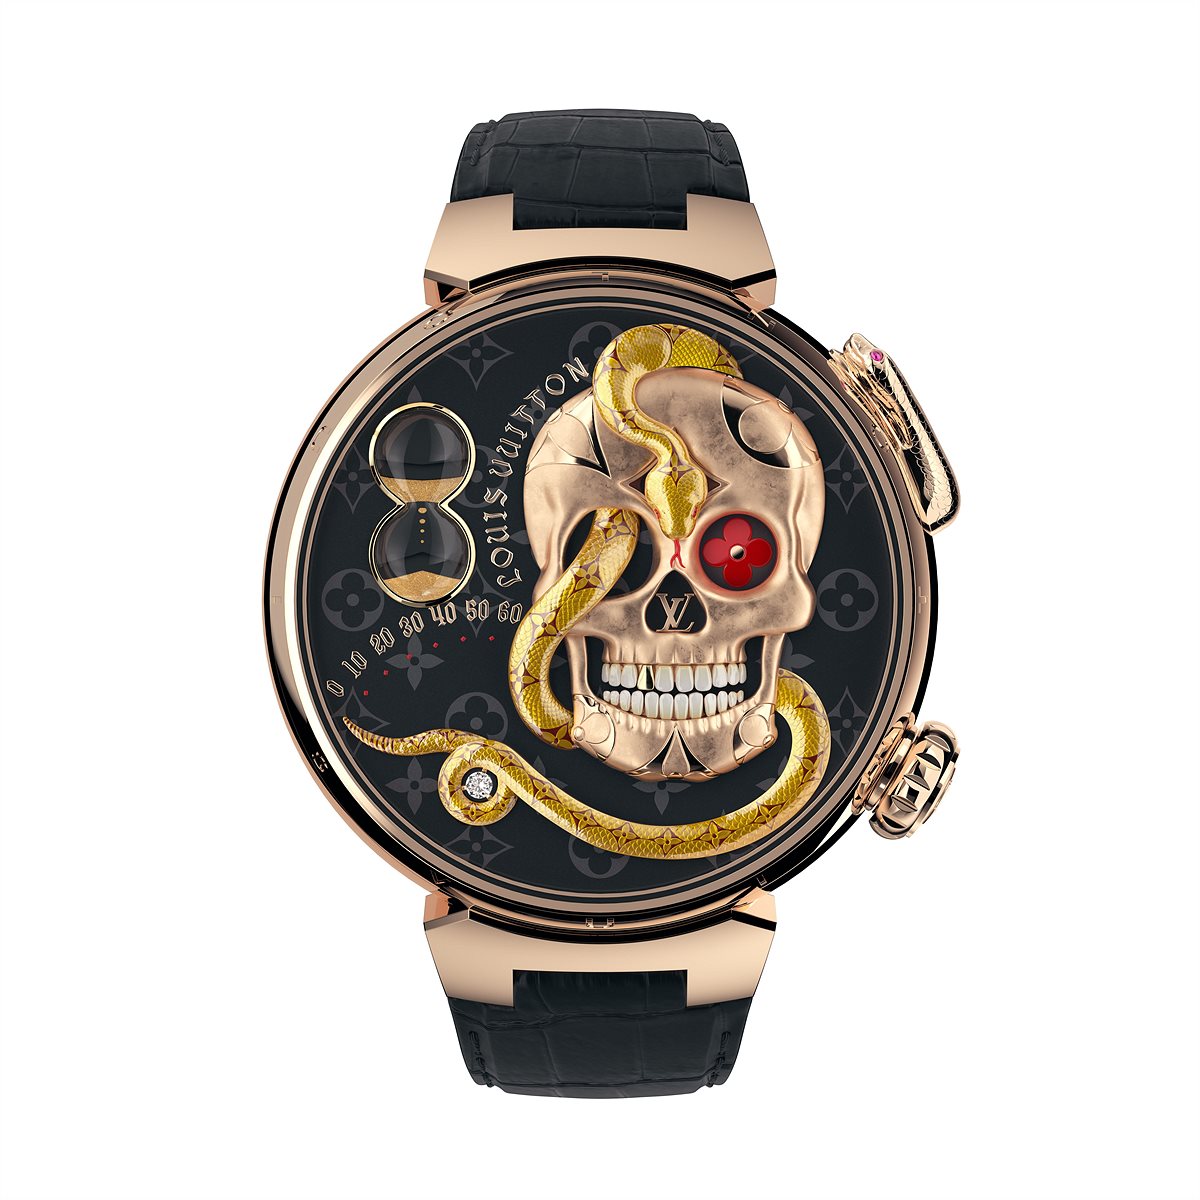 Louis Vuitton : la Tambour Carpe Diem joyau de Watches and Wonders